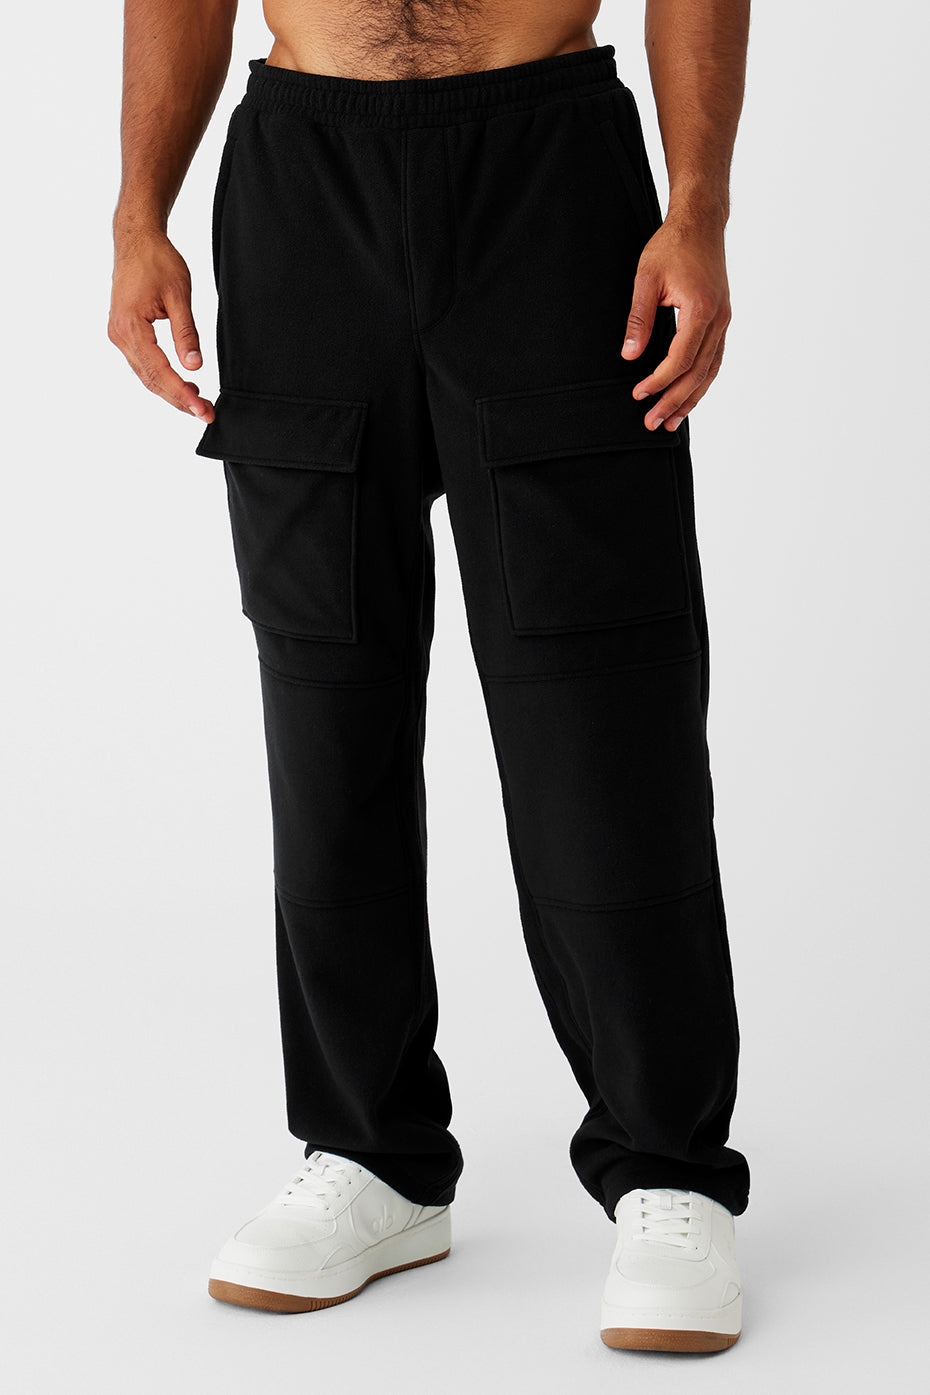 Horizon Yoga Cargo Pants